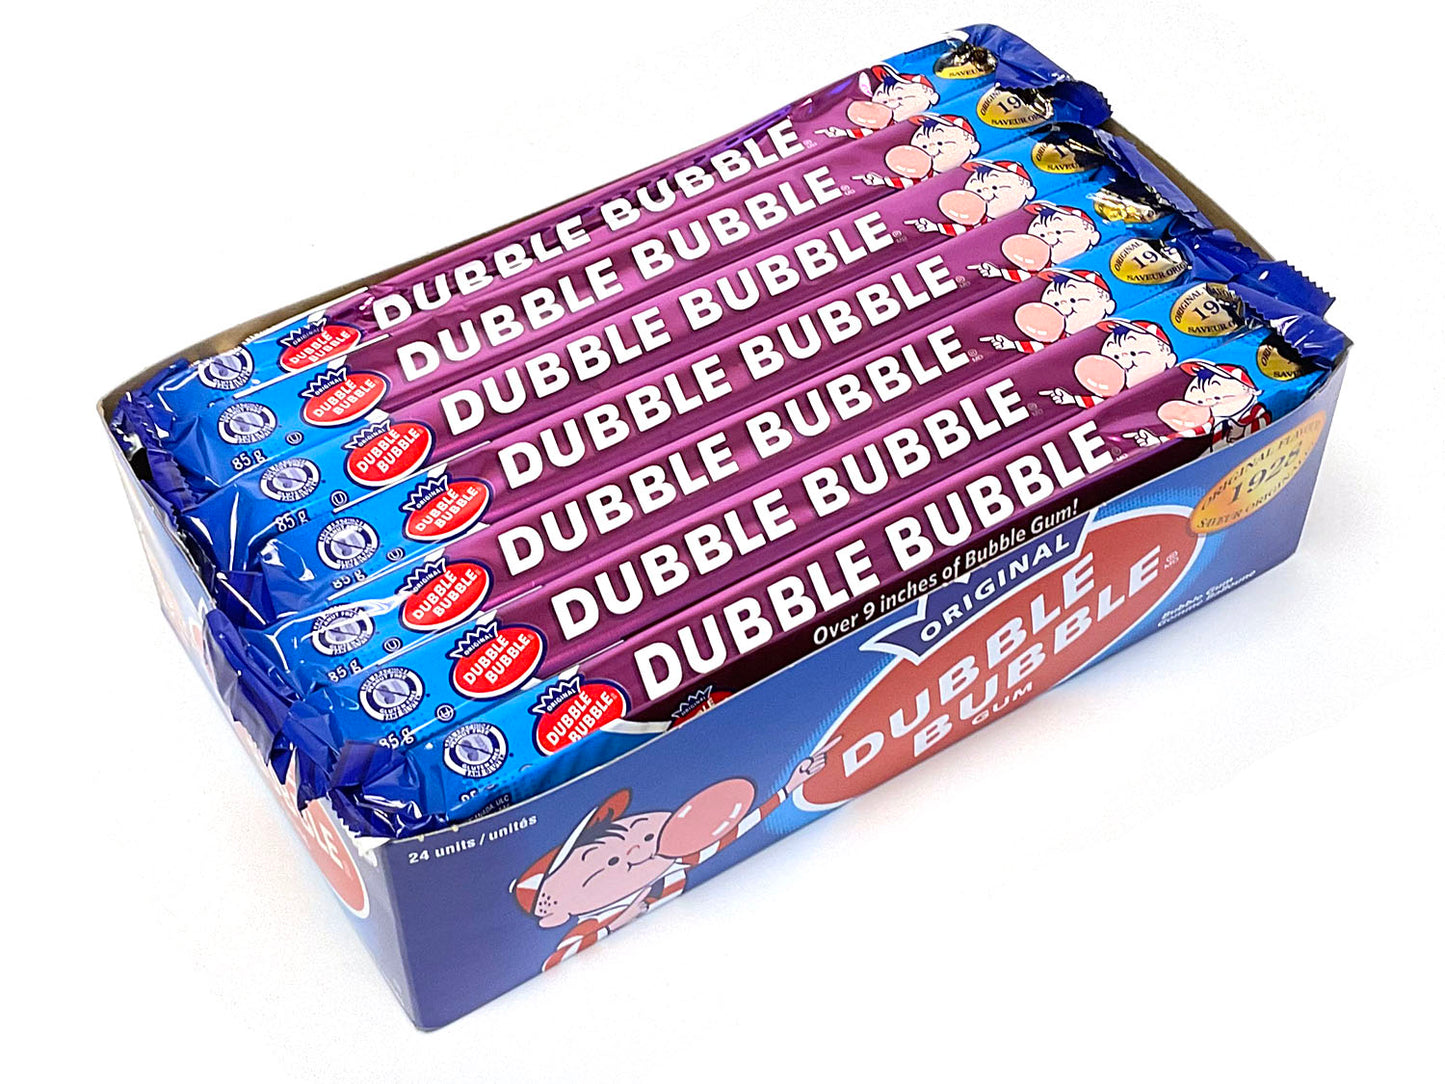 Dubble Bubble Office Pleasures Chicle Chewing Gum - 16-oz. Jar